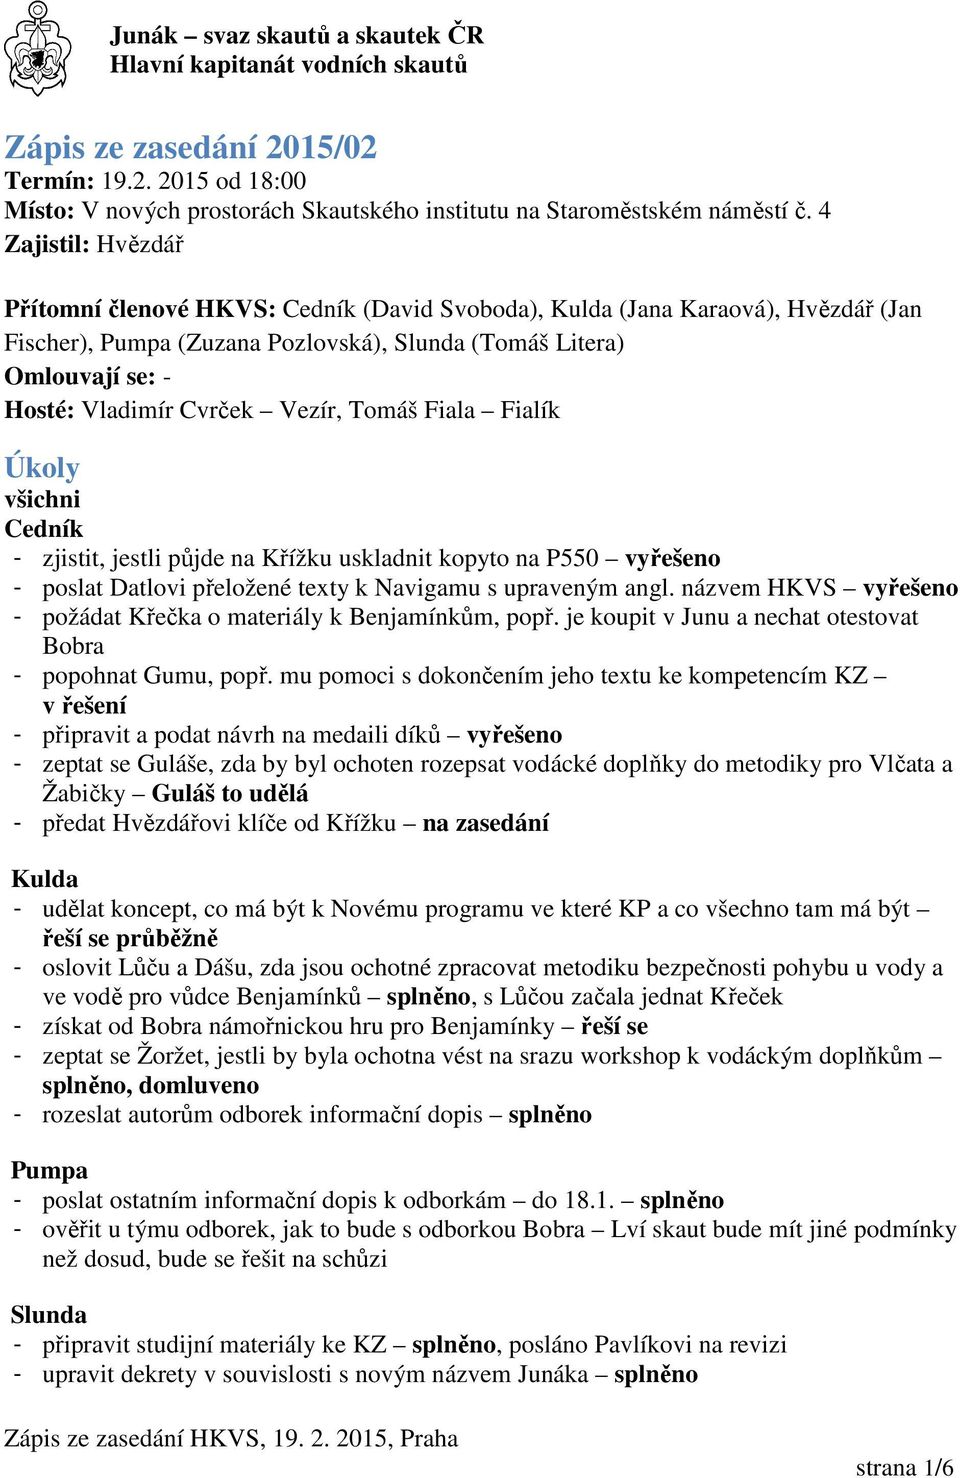 Vezír, Tomáš Fiala Fialík Úkoly všichni Cedník - zjistit, jestli půjde na Křížku uskladnit kopyto na P550 vyřešeno - poslat Datlovi přeložené texty k Navigamu s upraveným angl.